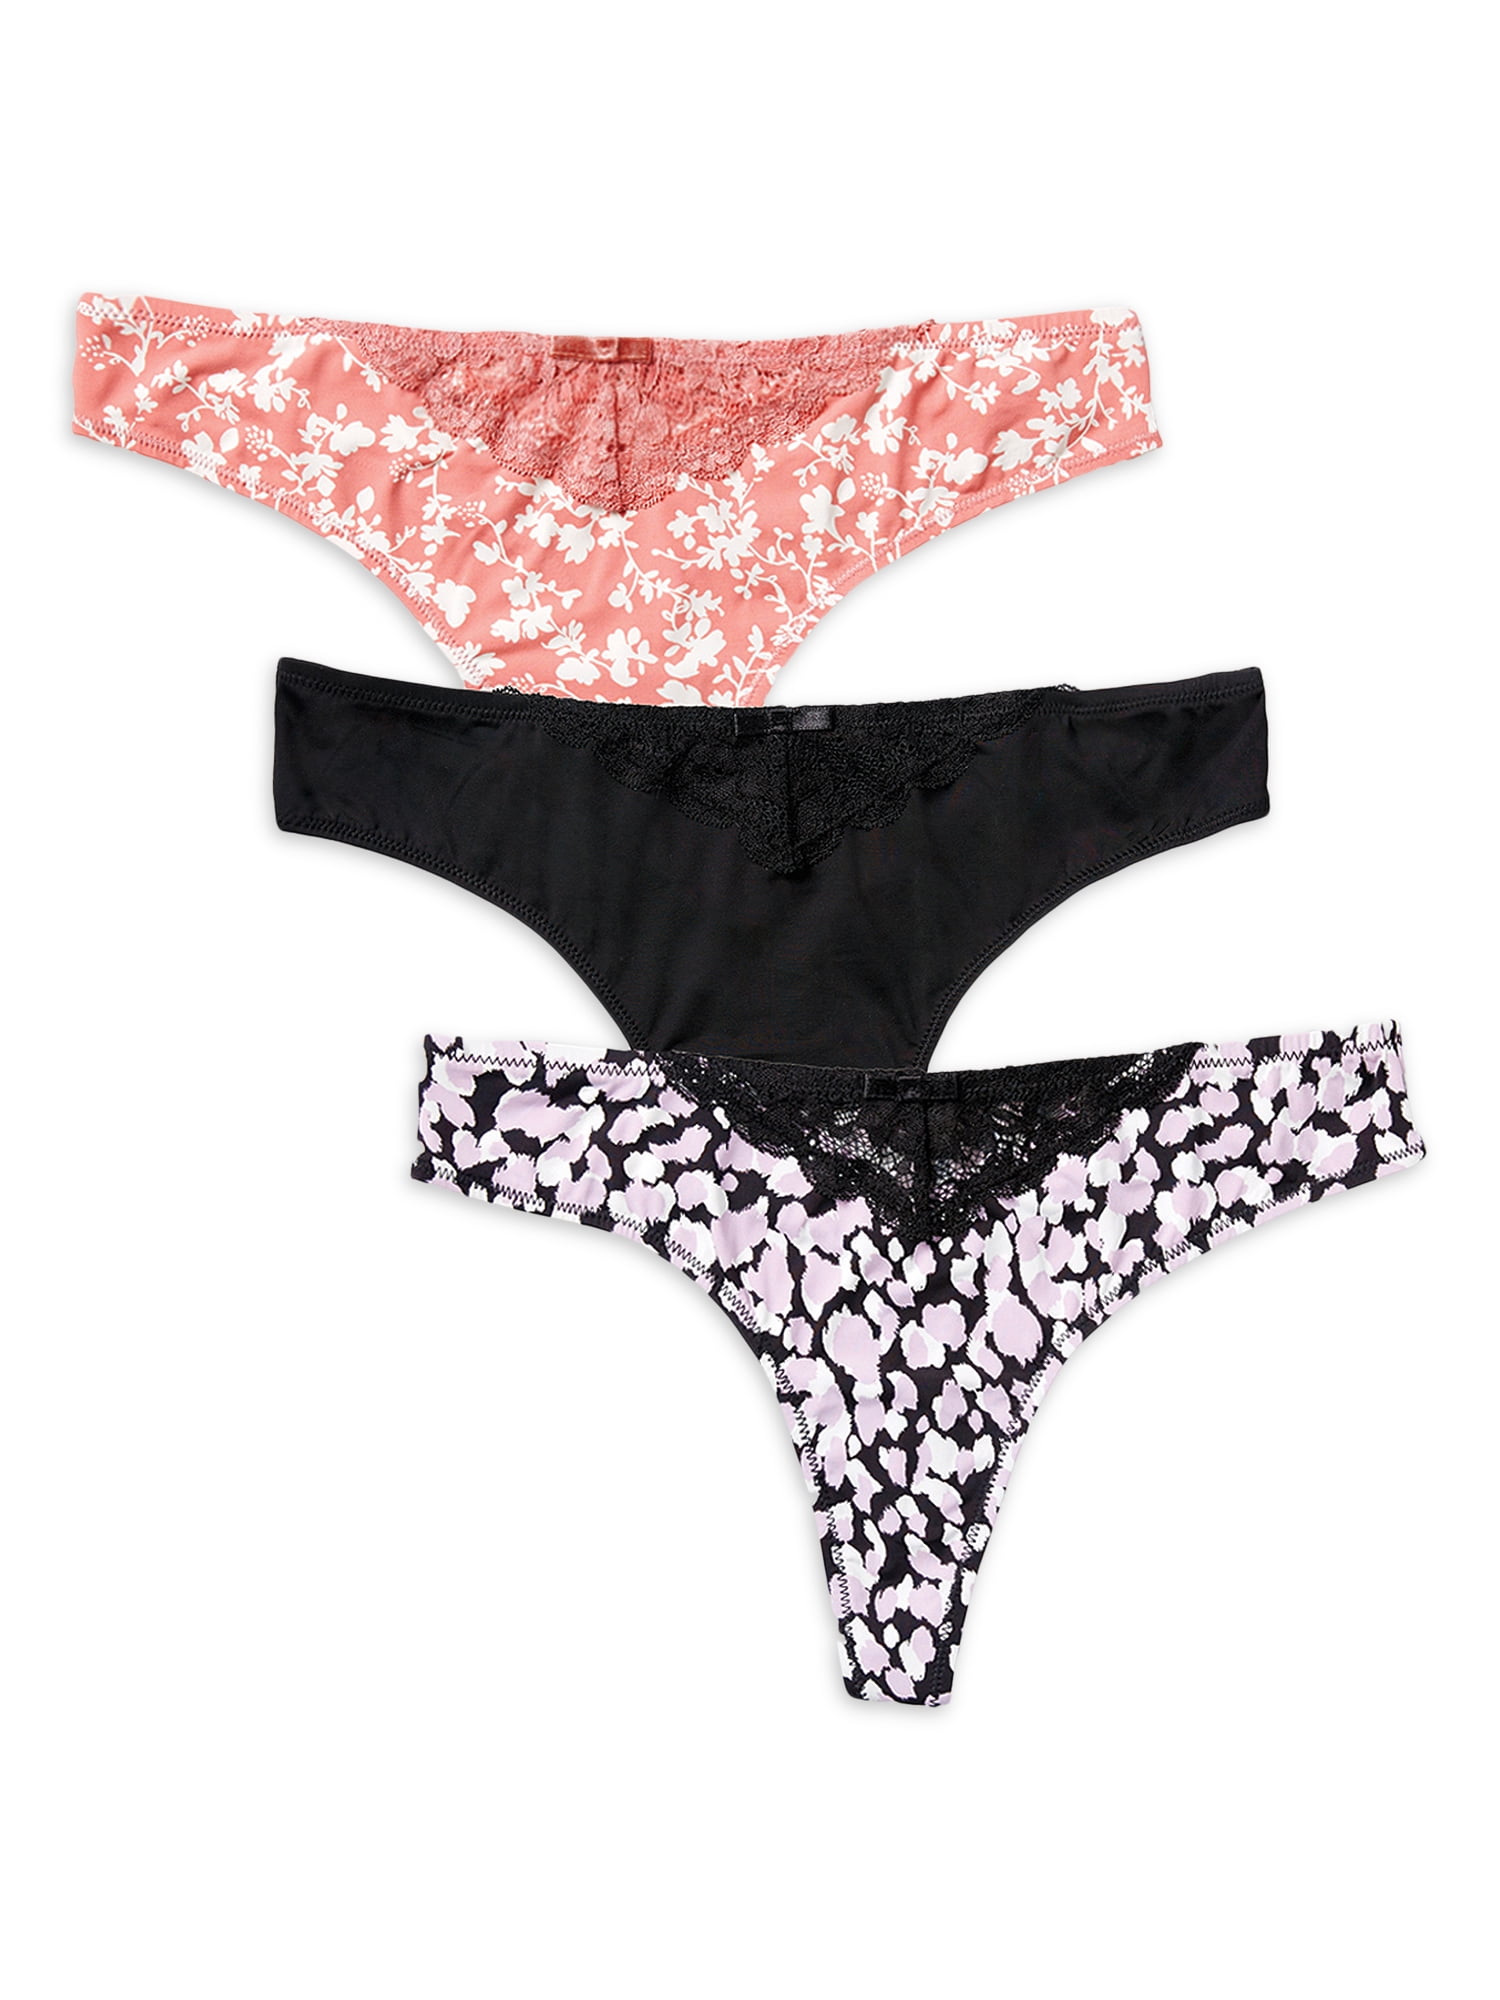 Secret Treasures Women's Microfiber Thong Panties, 3-Pack - Walmart.com